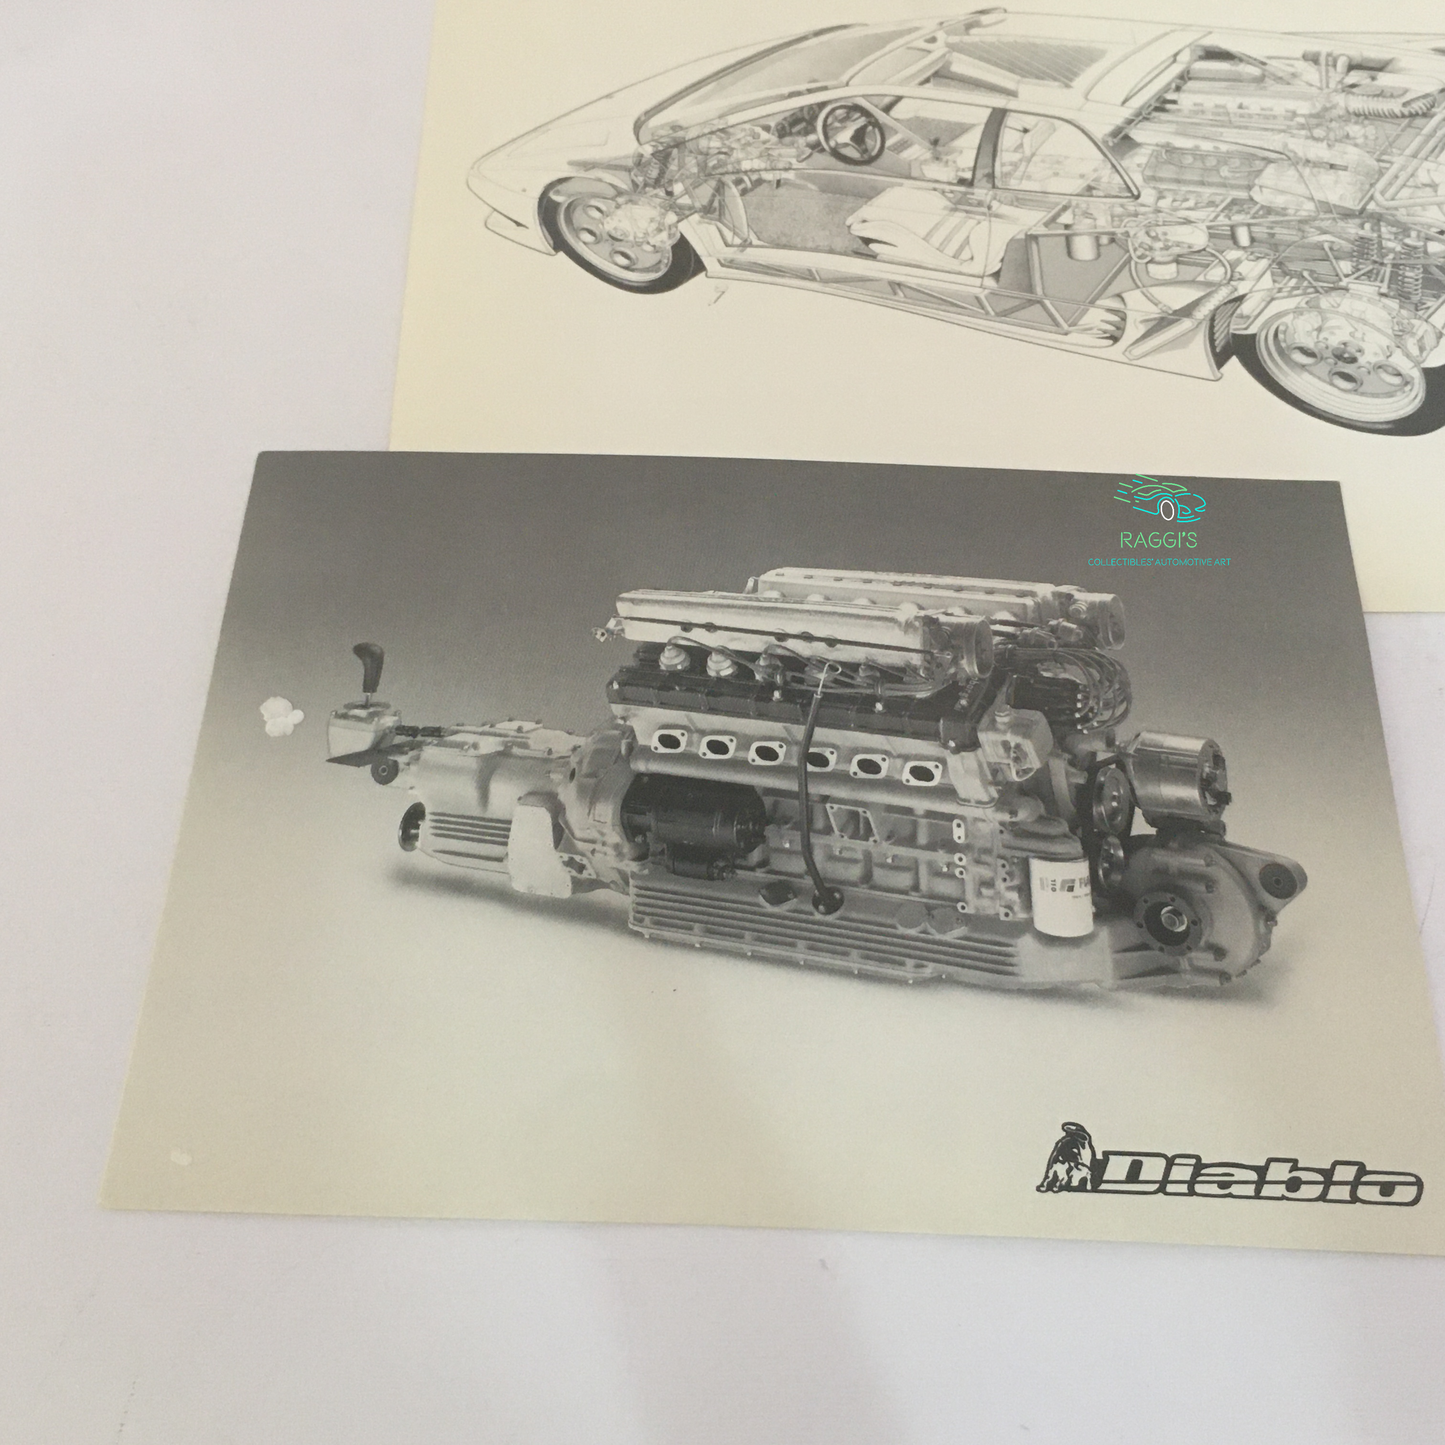 Lamborghini, Press Kit Presentation in Monte Carlo March 1990 Lamborghini Diablo